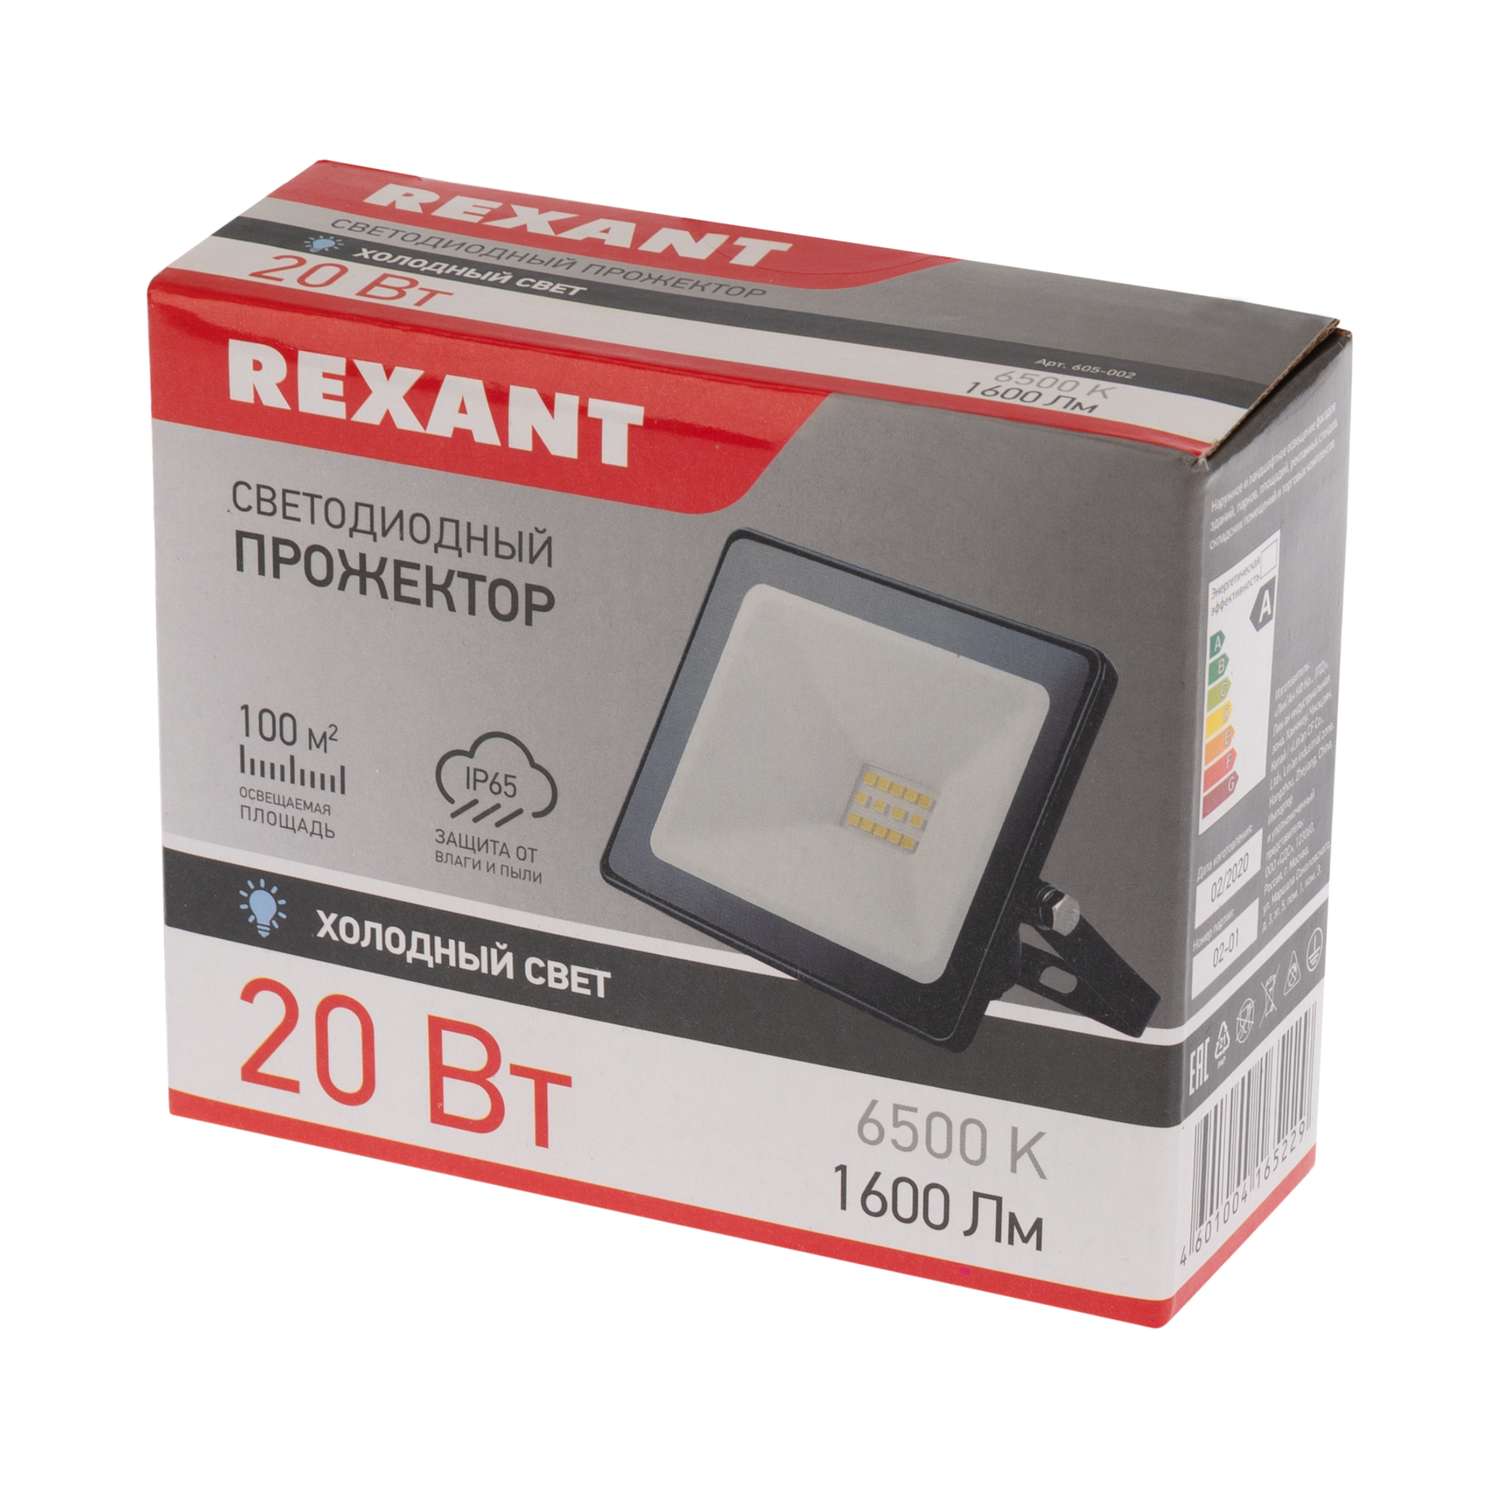 Прожектор REXANT 20 Вт светодиодный 1600Лм 6500К холодный свет черный корпус - фото 4